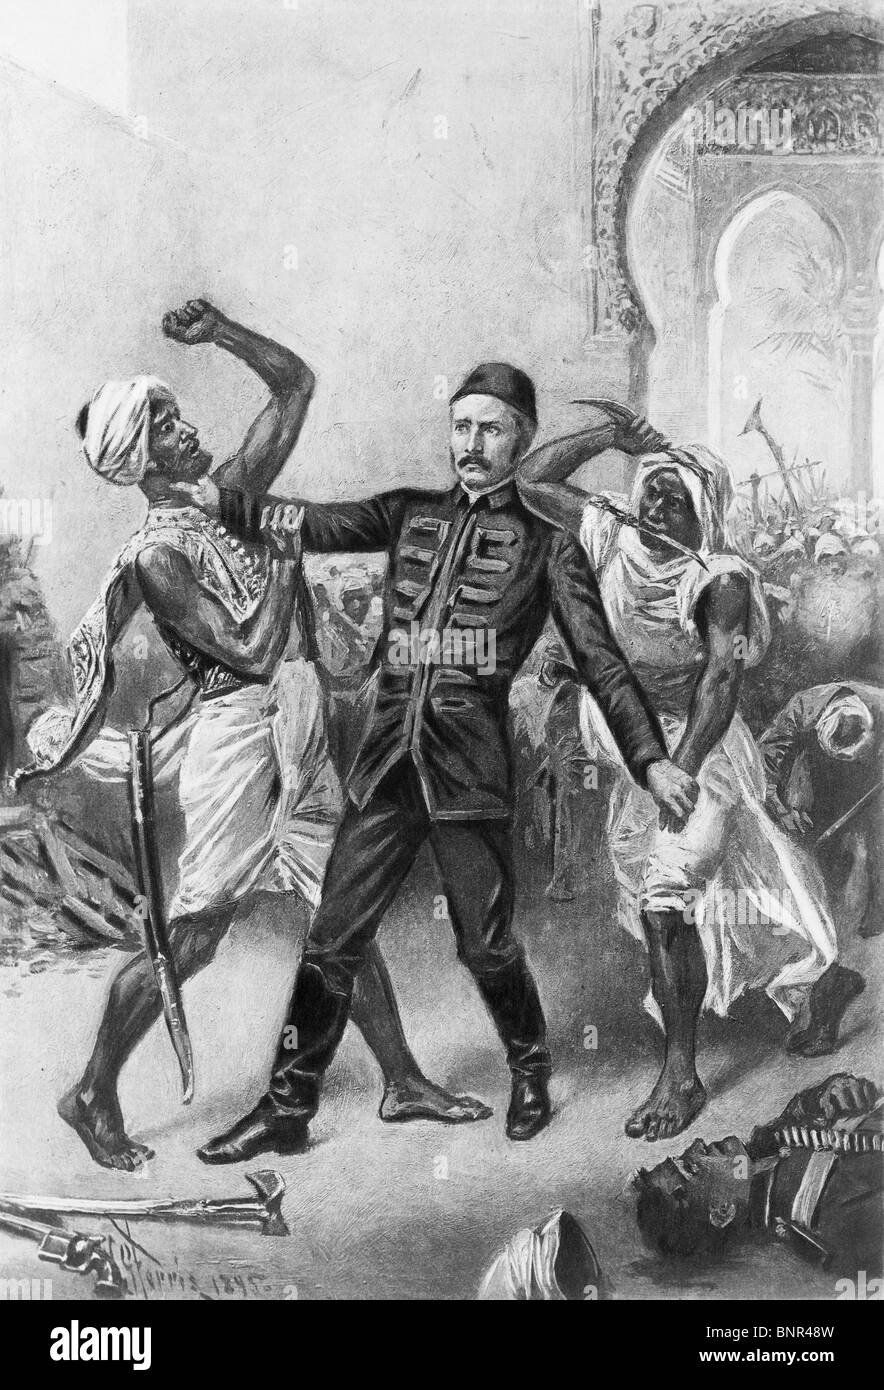 Stampa Vintage raffigurante la morte del generale inglese Charles Gordon nel gennaio 1885 in seguito all'Assedio di Khartoum in Sudan. Foto Stock